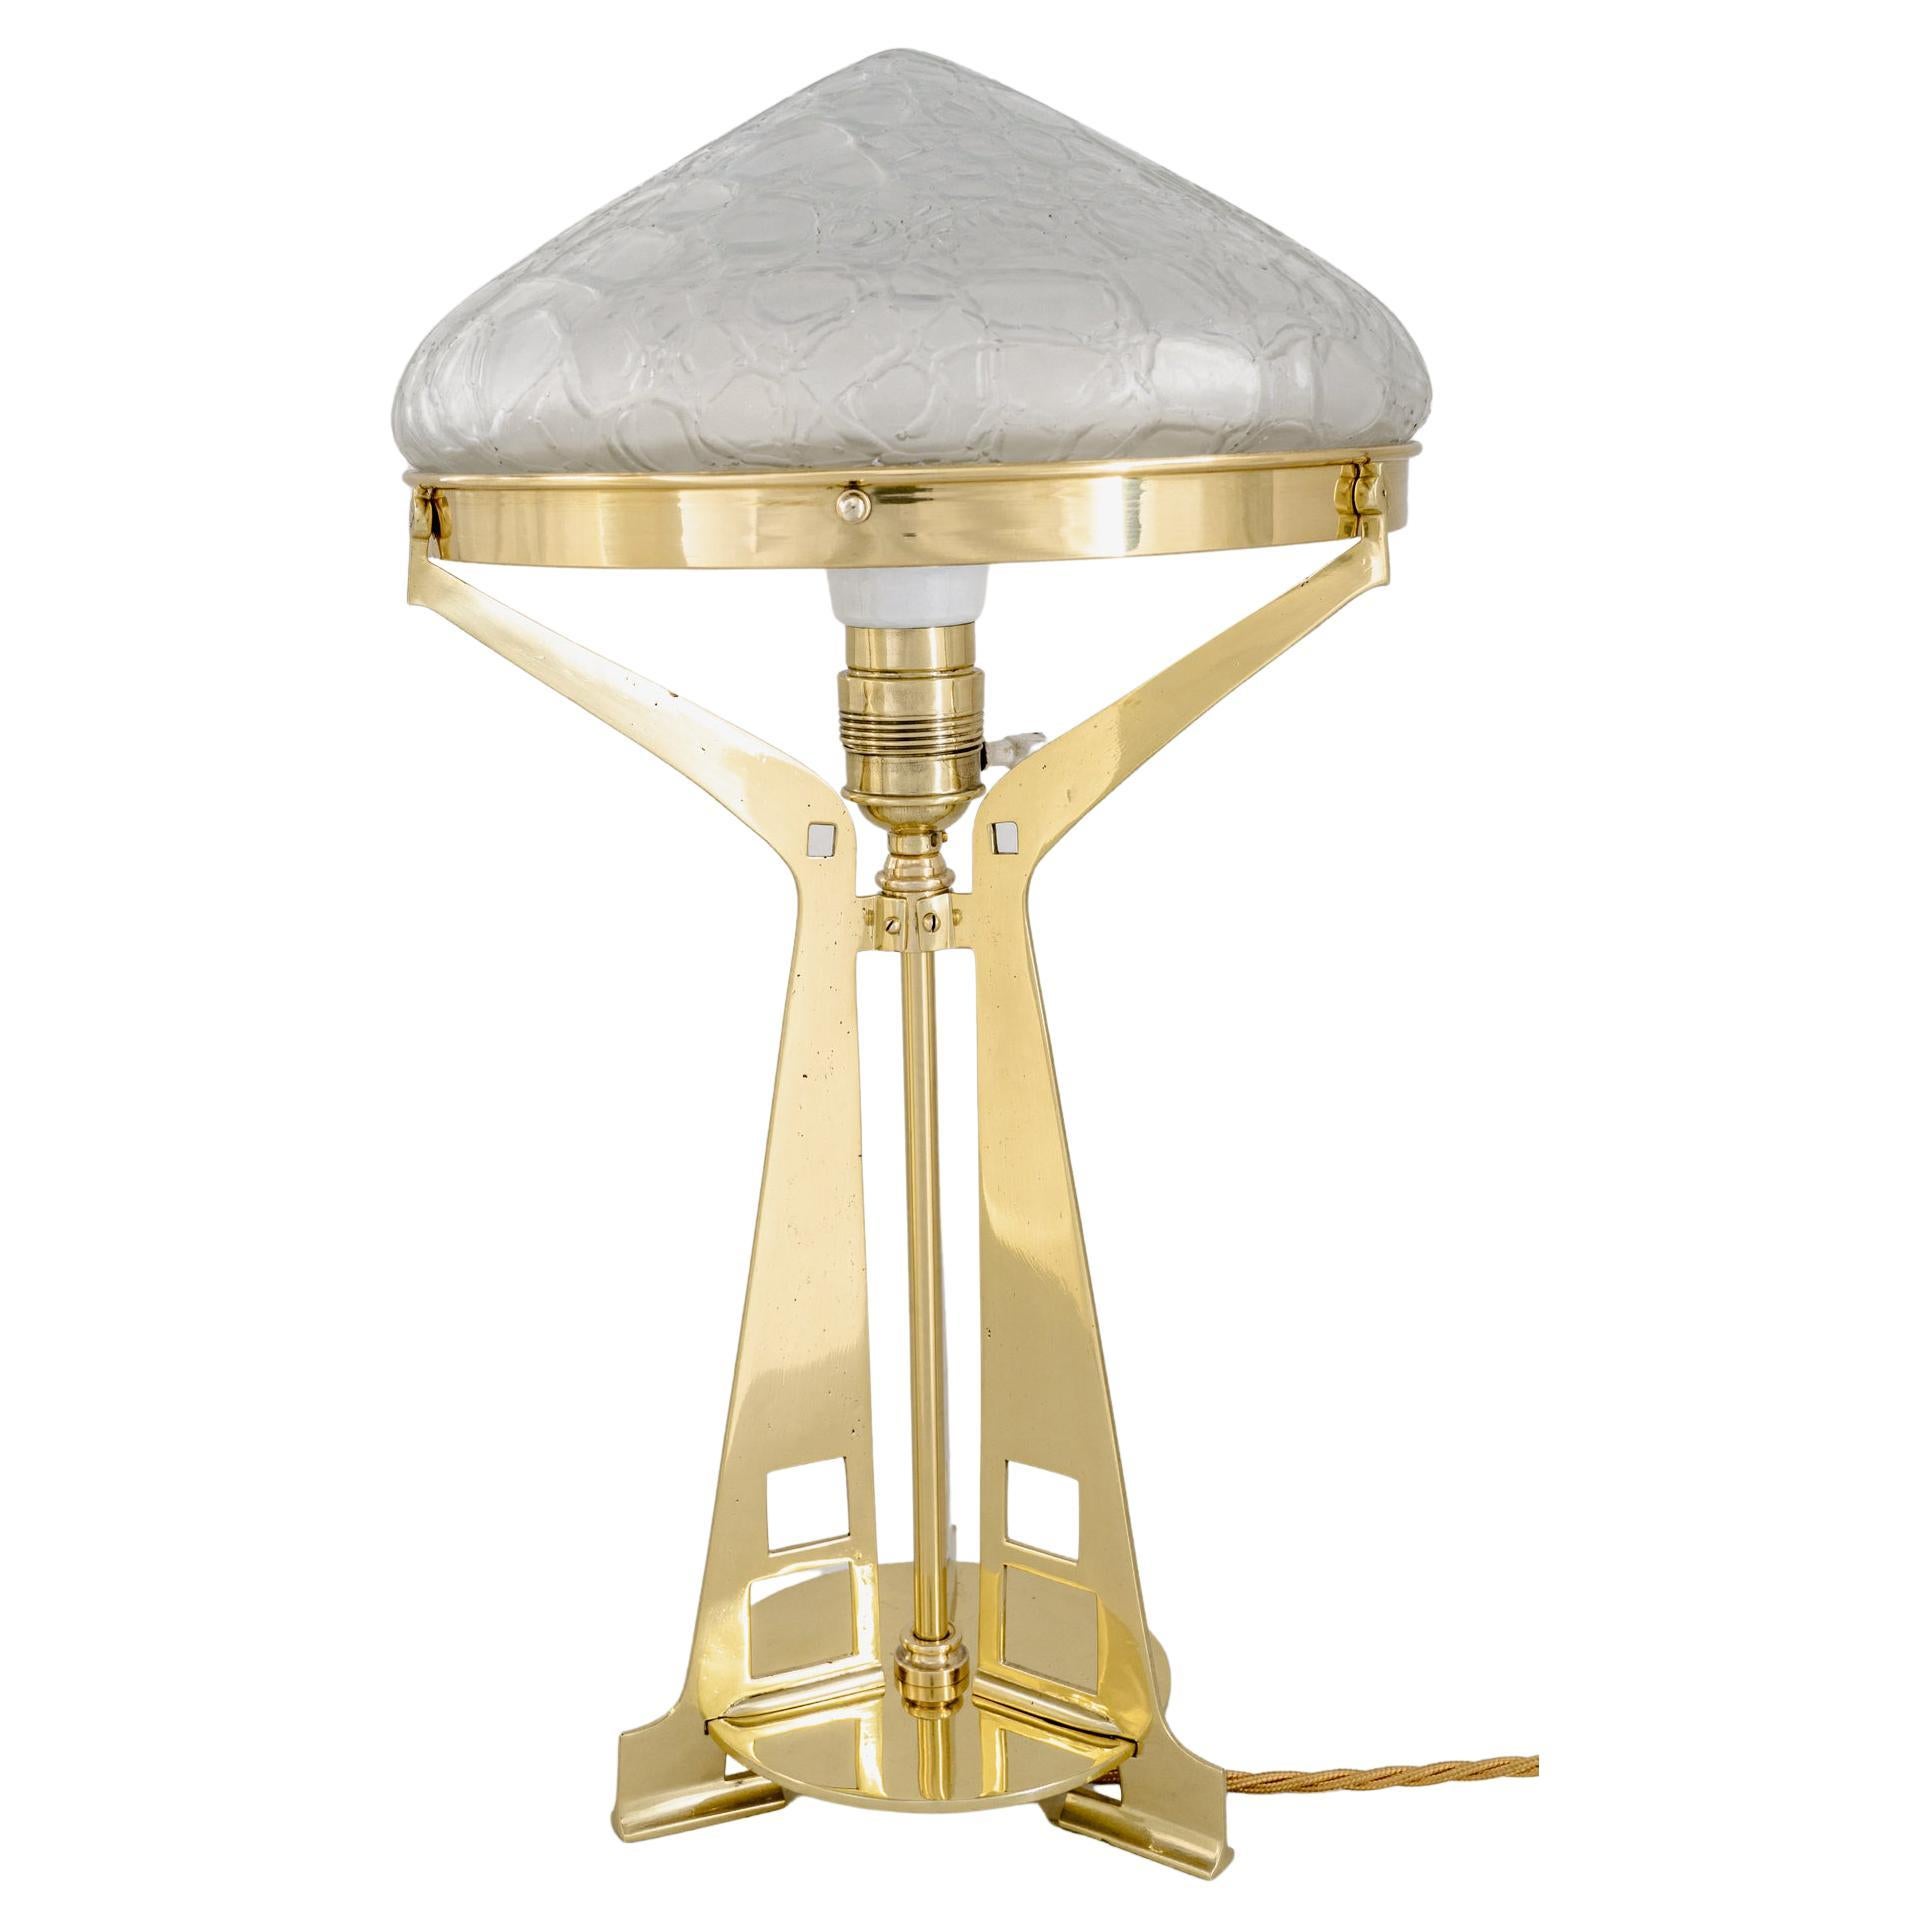 Art Deco Table Lamp around 1920s